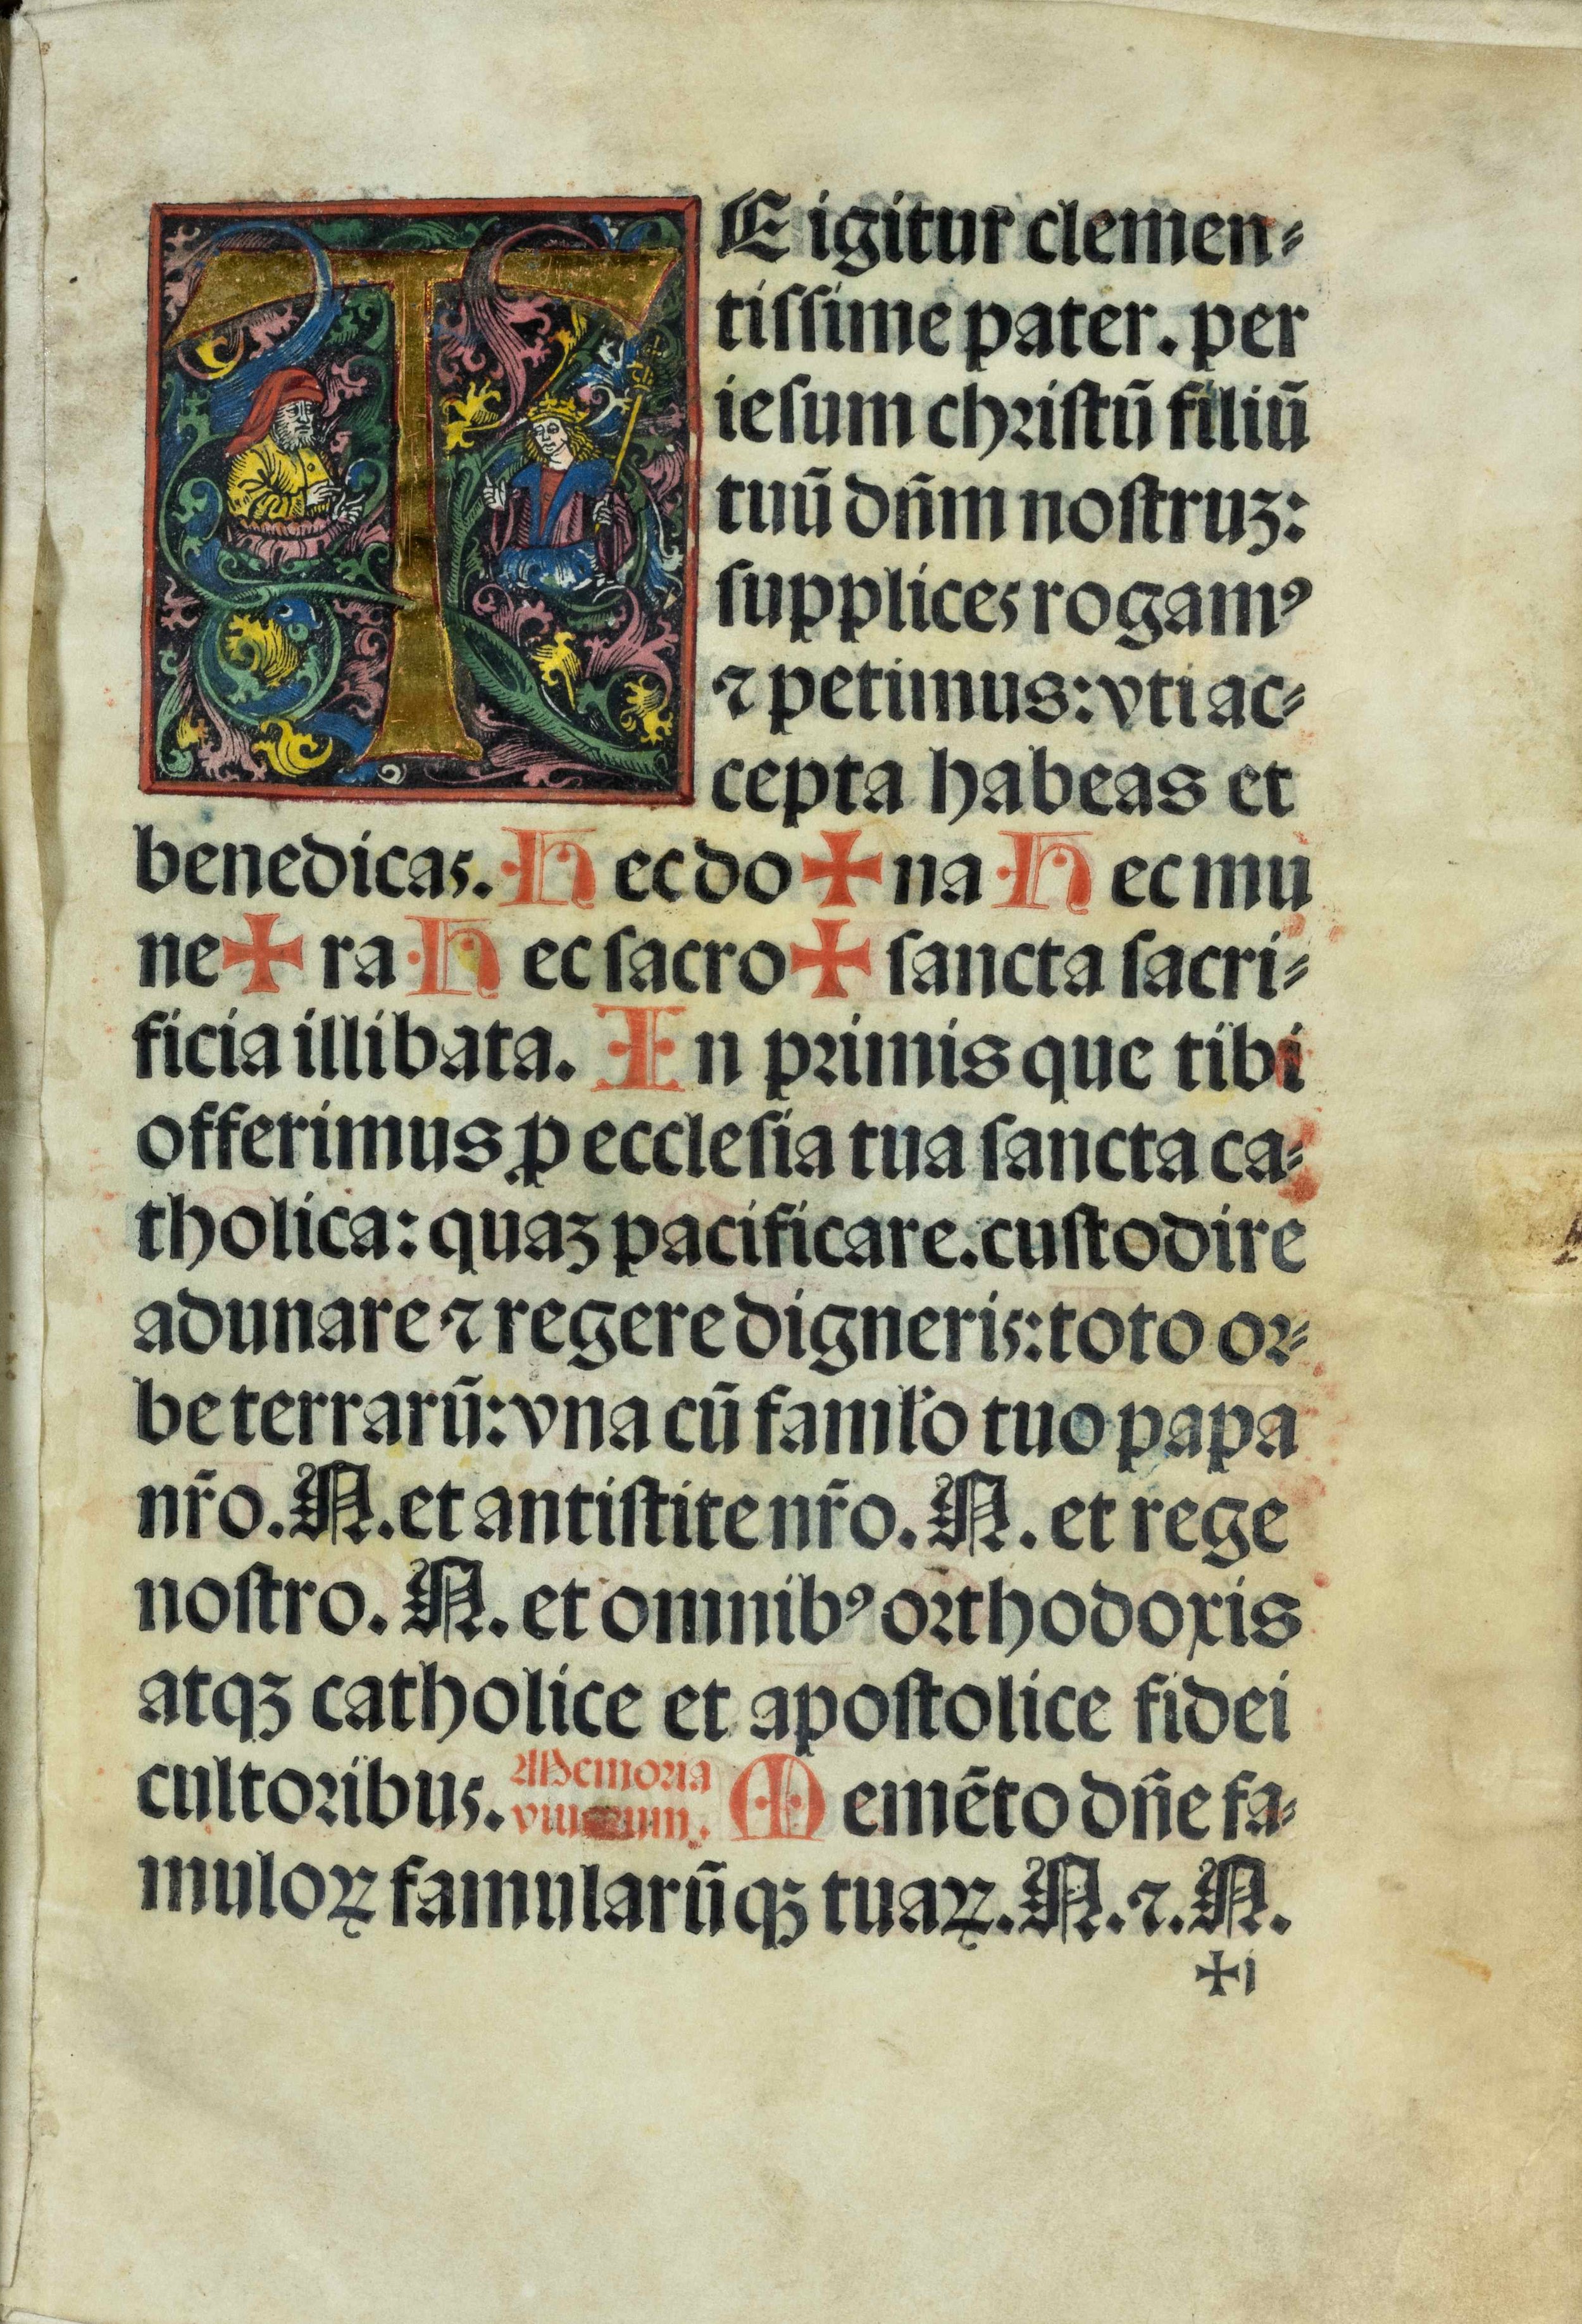 Missale-Saltzeburgense-lucas-cranach-der-aeltere-elder-crucifixion-missel-illuminated-woodcut-1506-1b.jpg